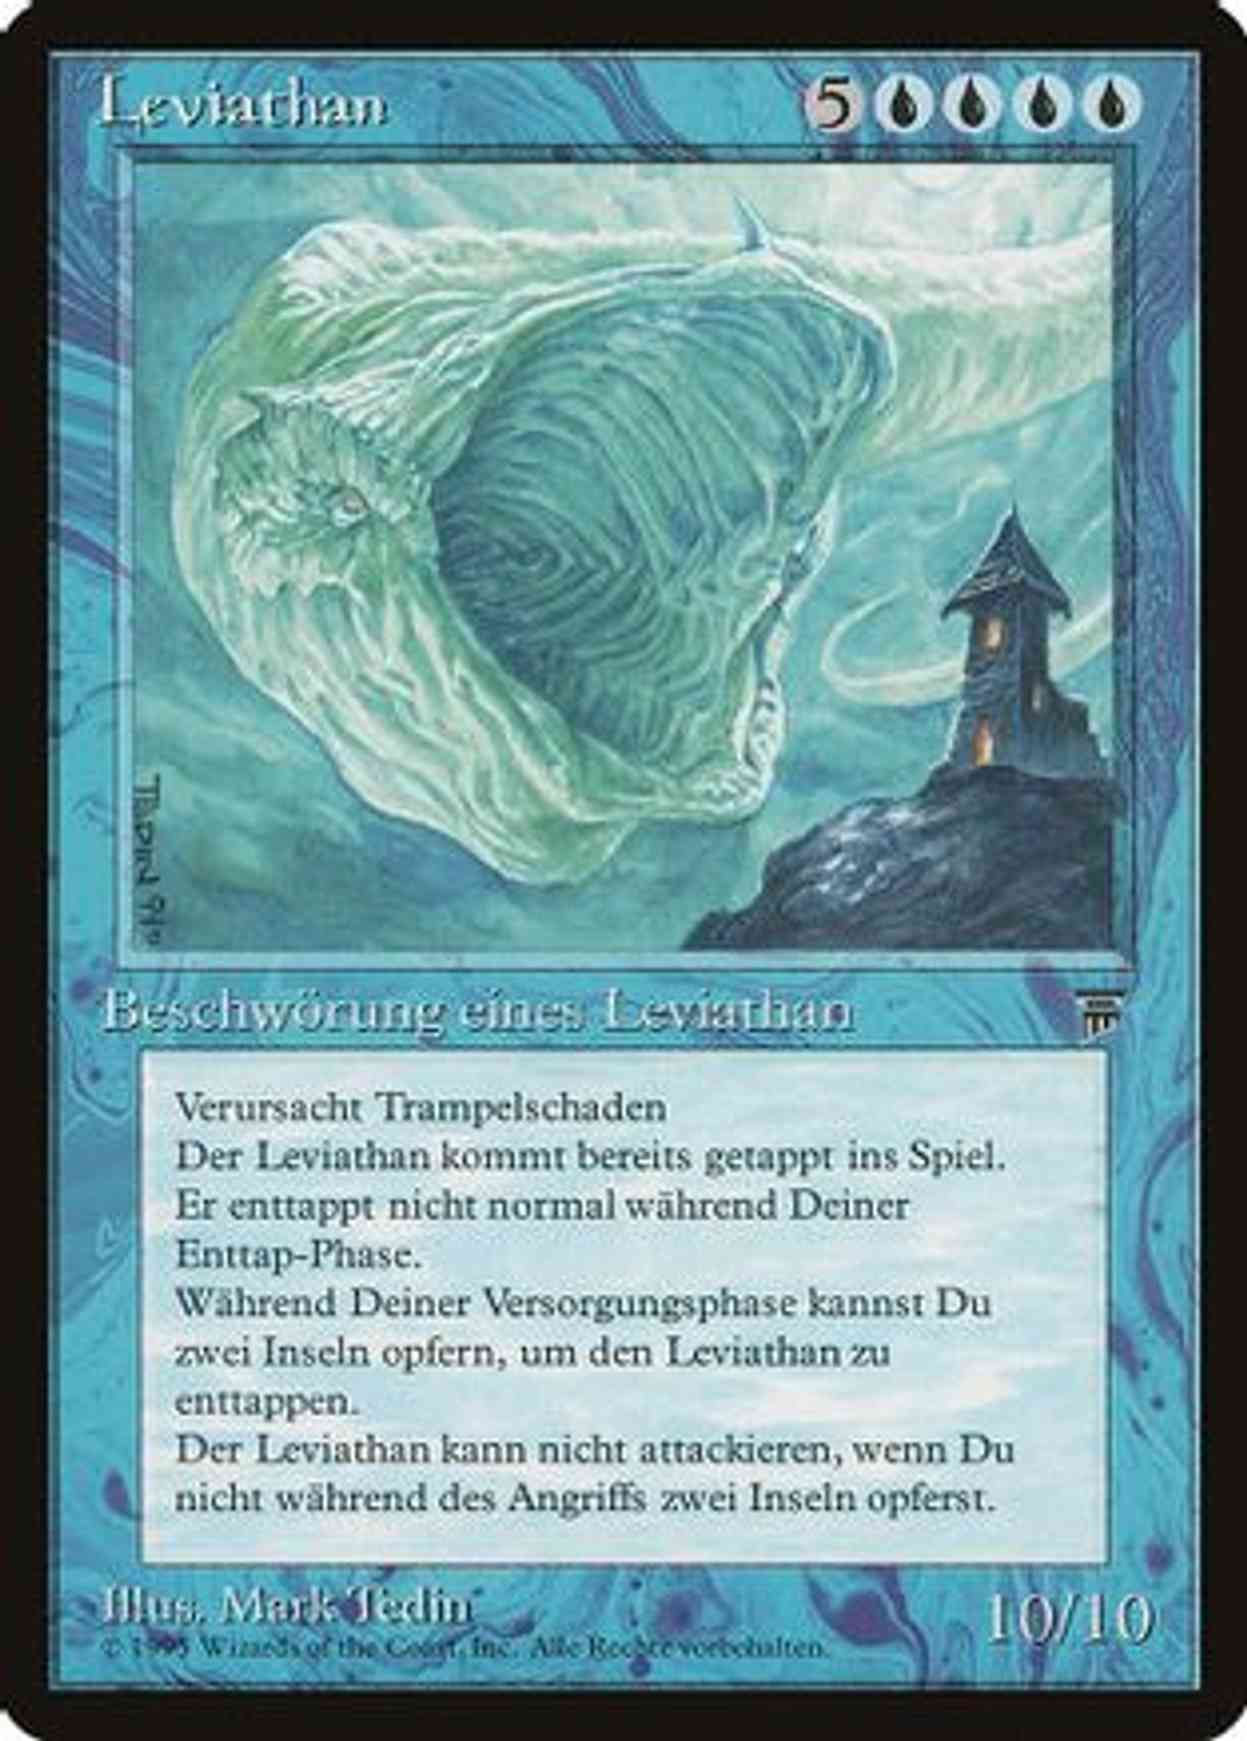 Leviathan (German) magic card front